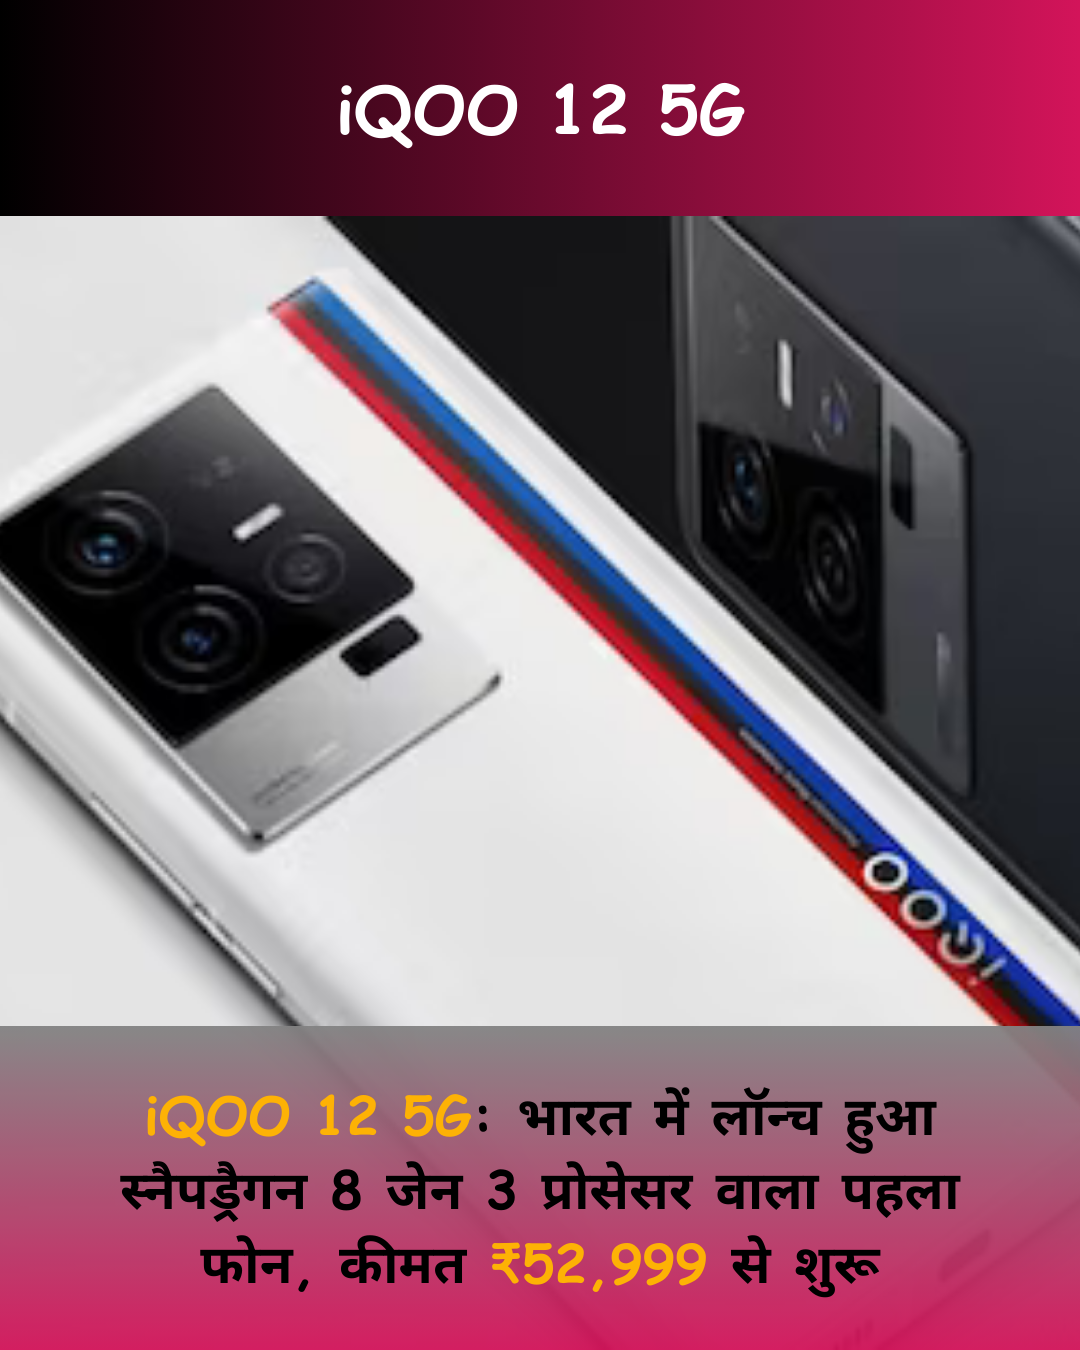 iQOO 12 5G: भारत में लॉन्च हुआ स्नैपड्रैगन 8 जेन 3 प्रोसेसर वाला पहला powerful फोन, कीमत ₹52,999 से शुरू